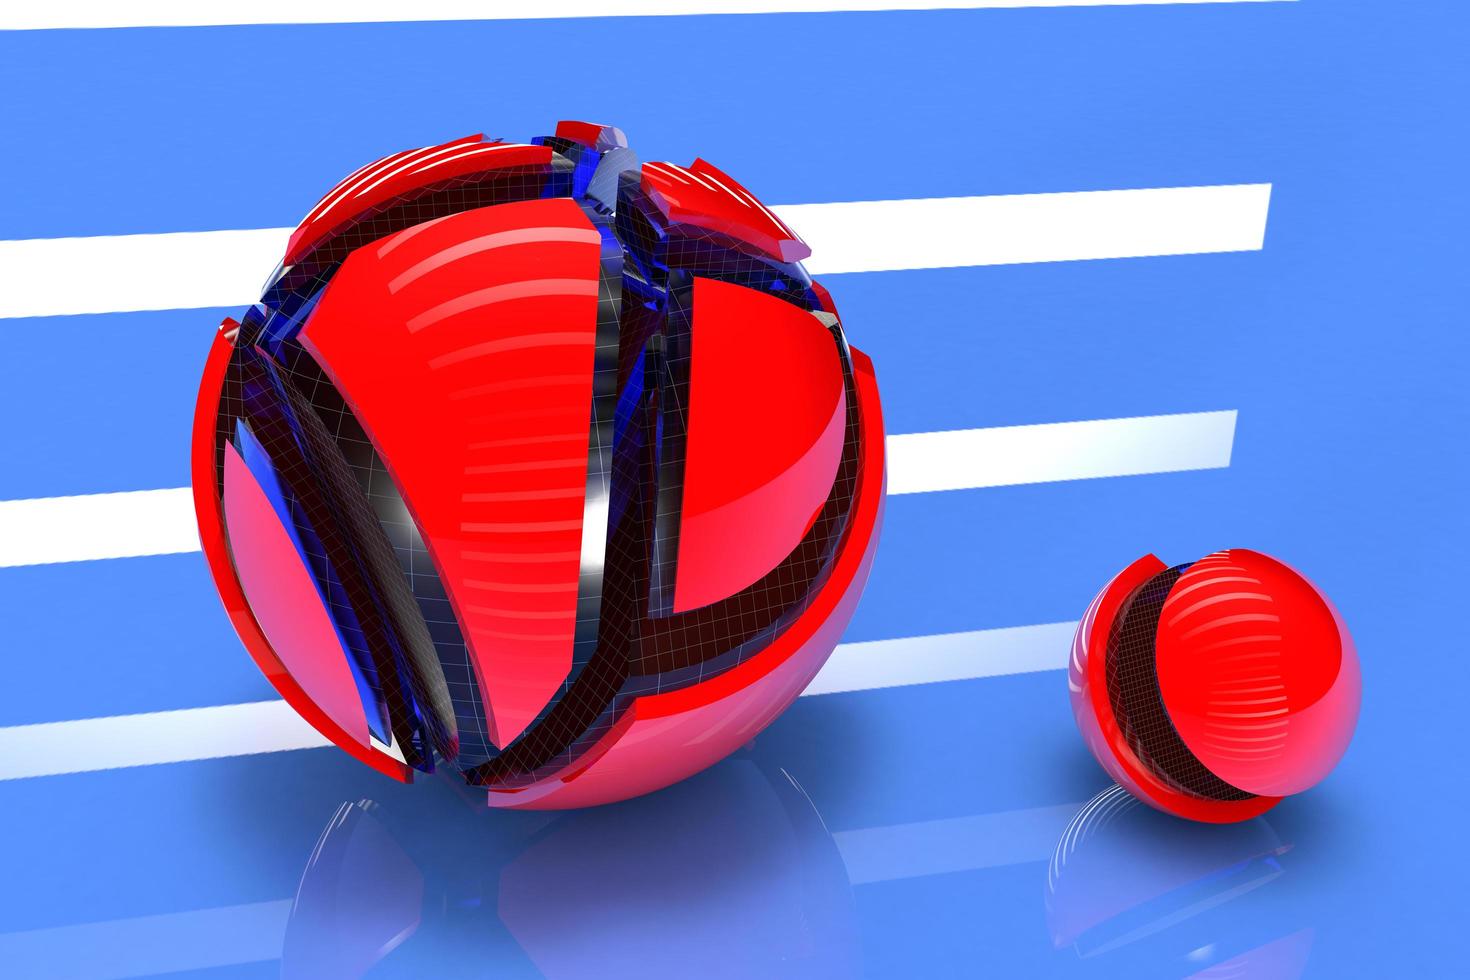 Esferas futuristas rojas 3d con una superficie reflectante sobre un fondo azul foto